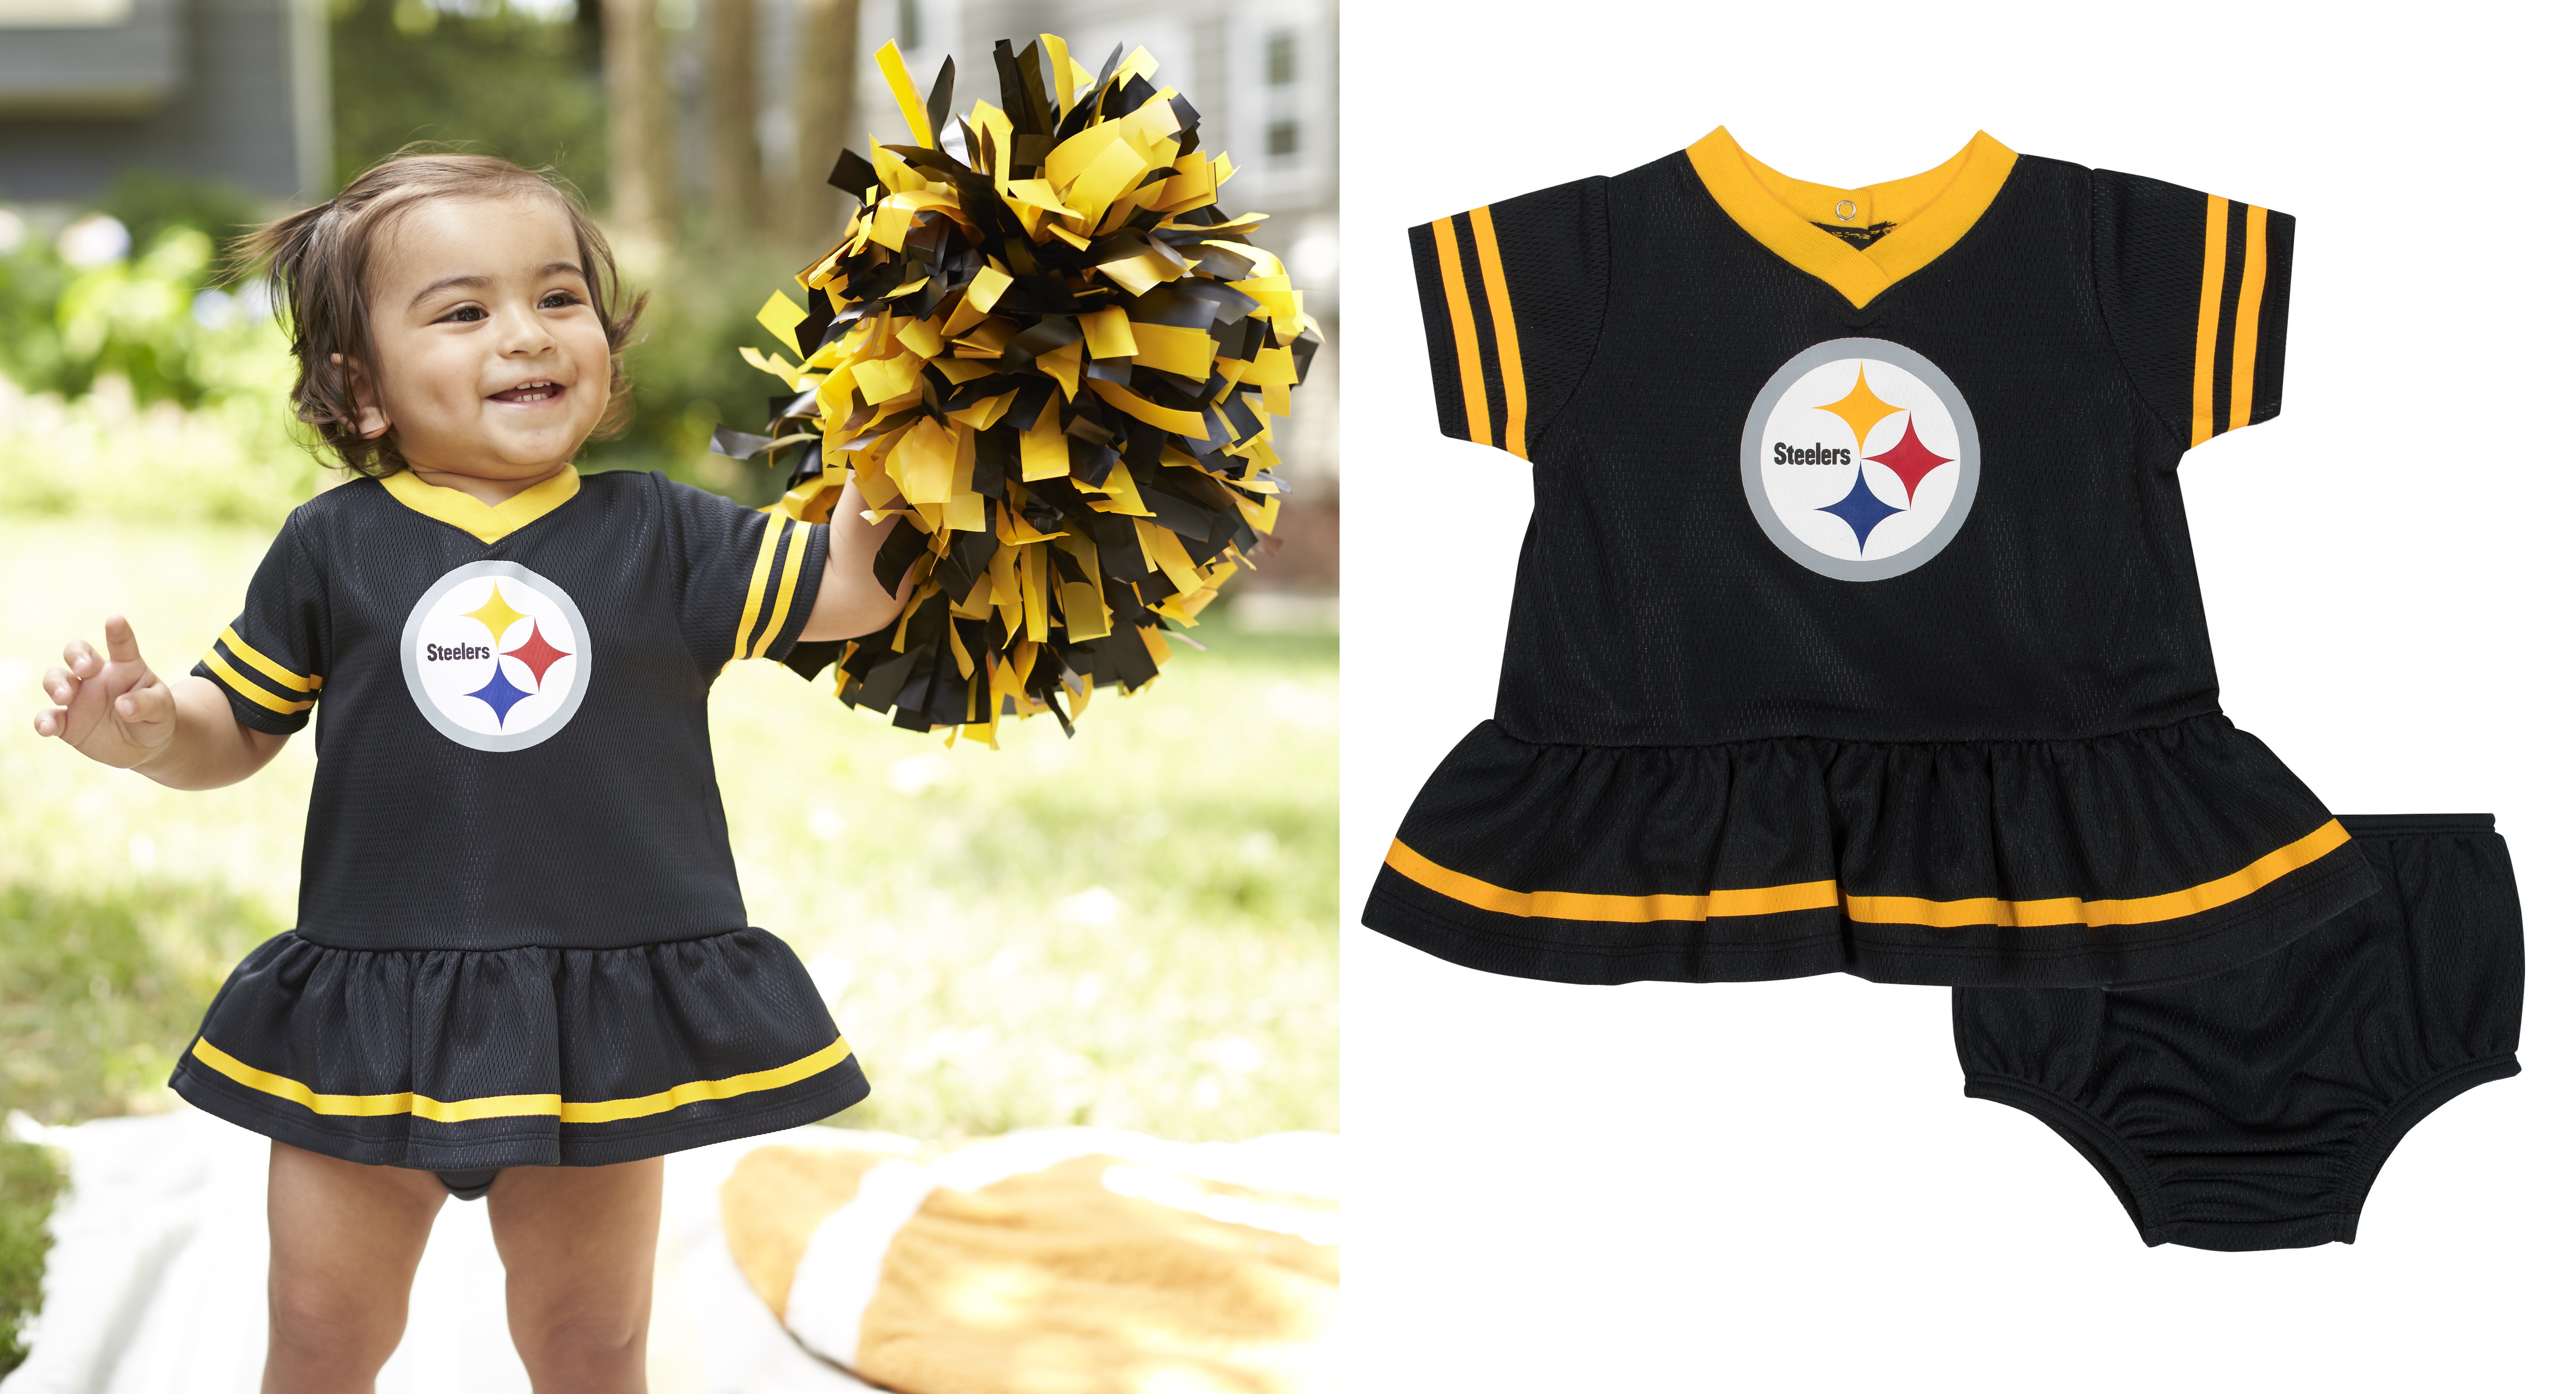 Steelers Cheerleaders Outfit